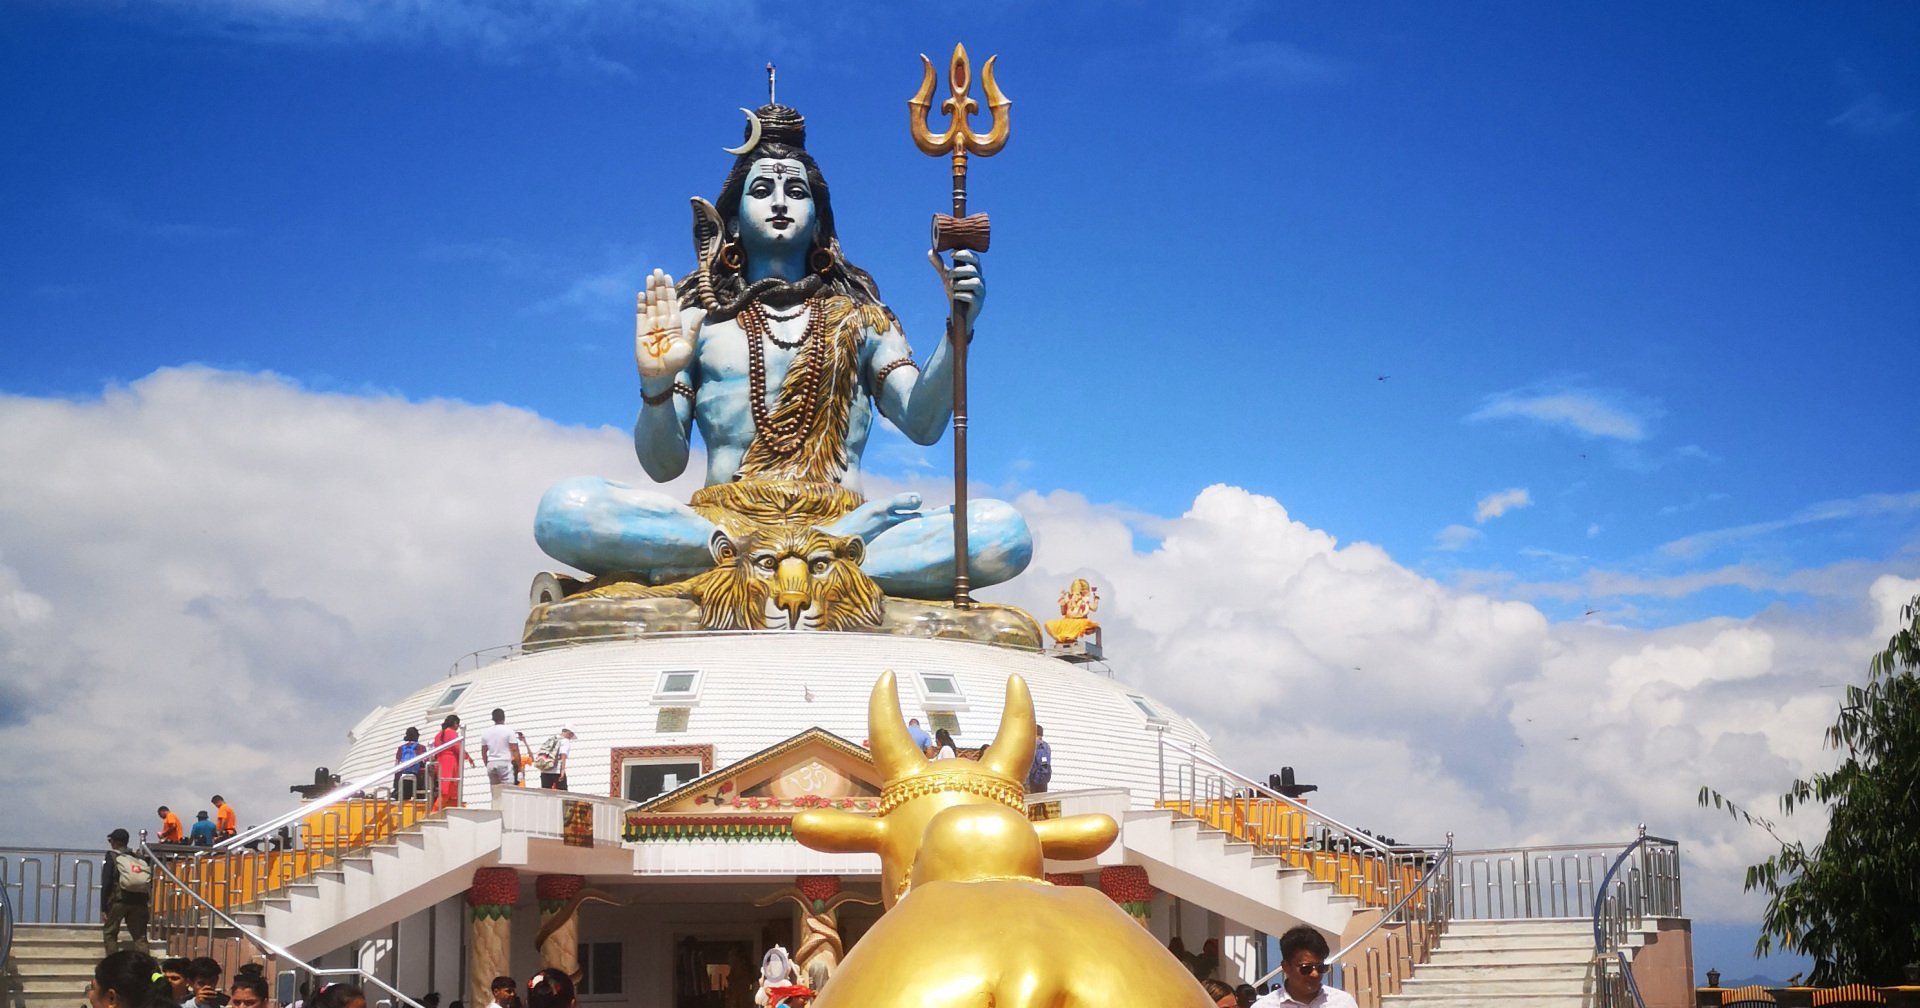 Shiva Statue Trek from Pokhara in Nepal